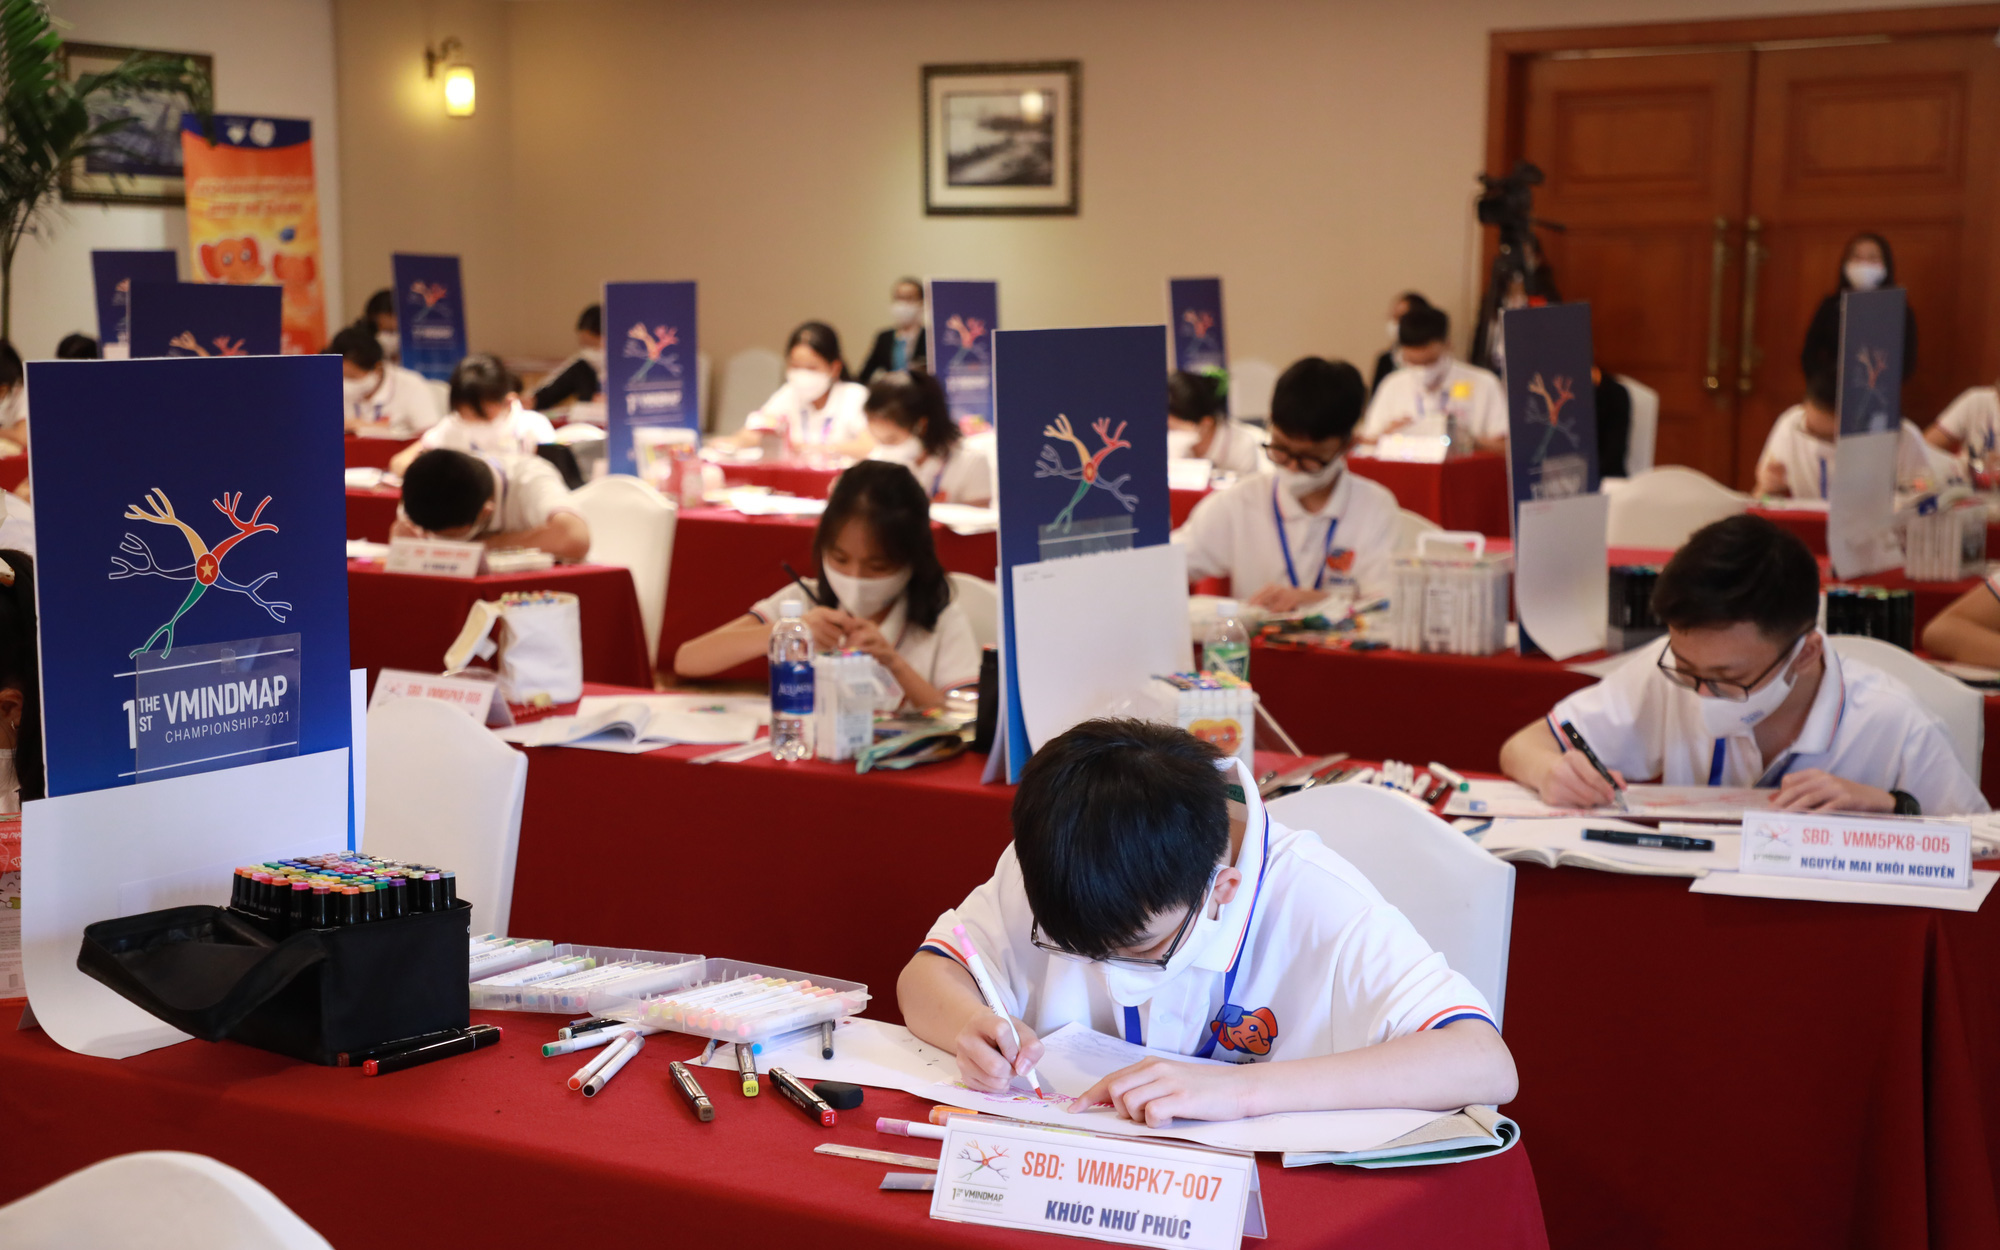 12 thí sinh giành giải nhất cuộc thi Sơ đồ tư duy Việt Nam, tham gia đội tuyển kỷ lục quốc gia